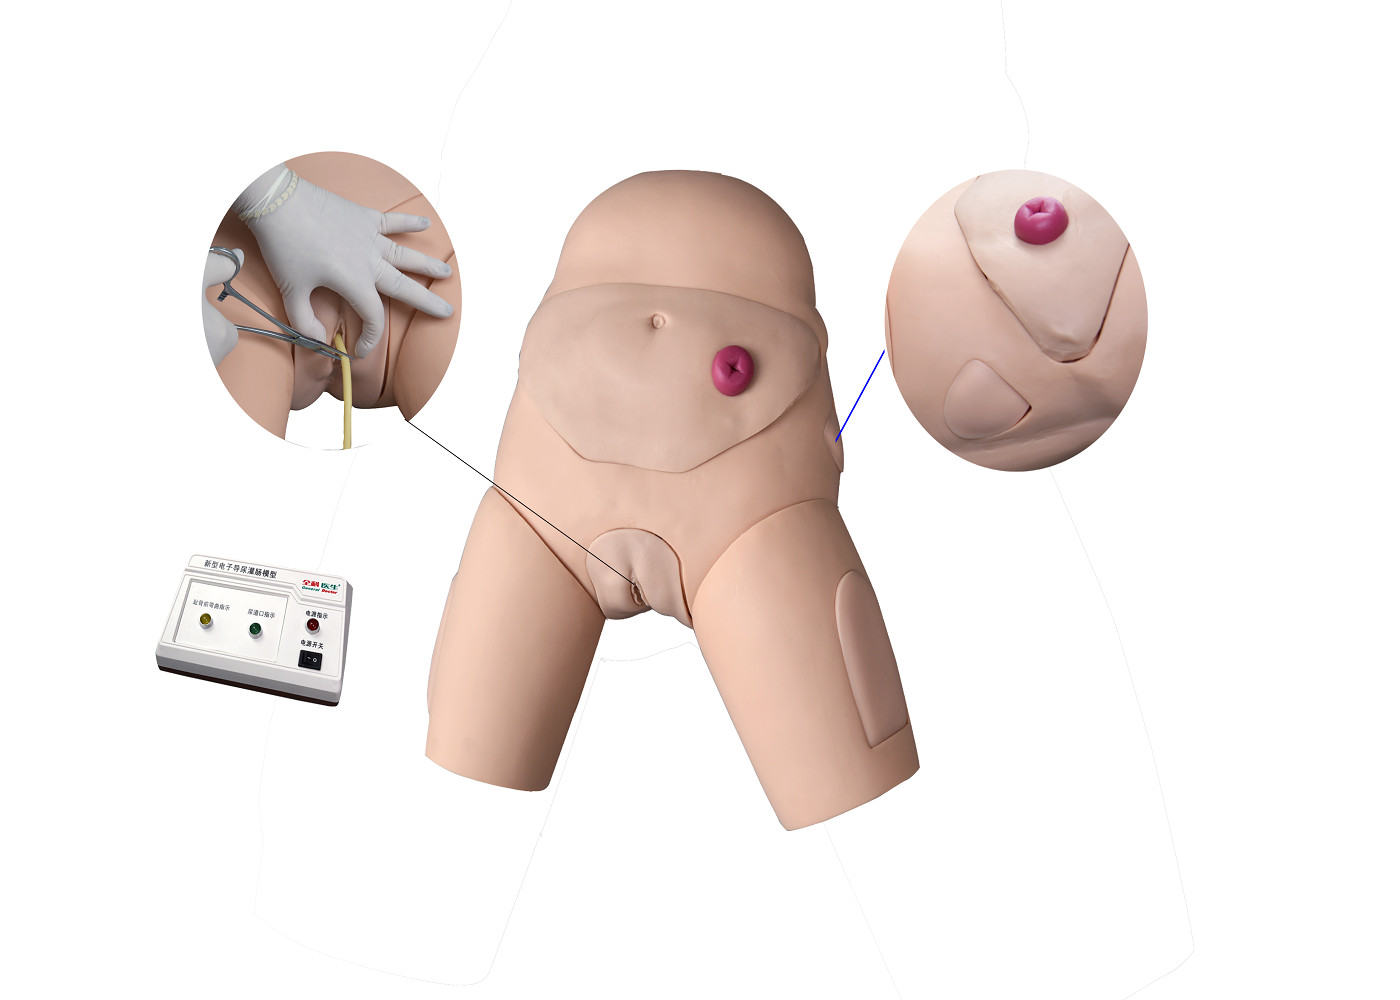 Elektronischer urethraler Katheterismus-und Klistier-Trainings-Simulator